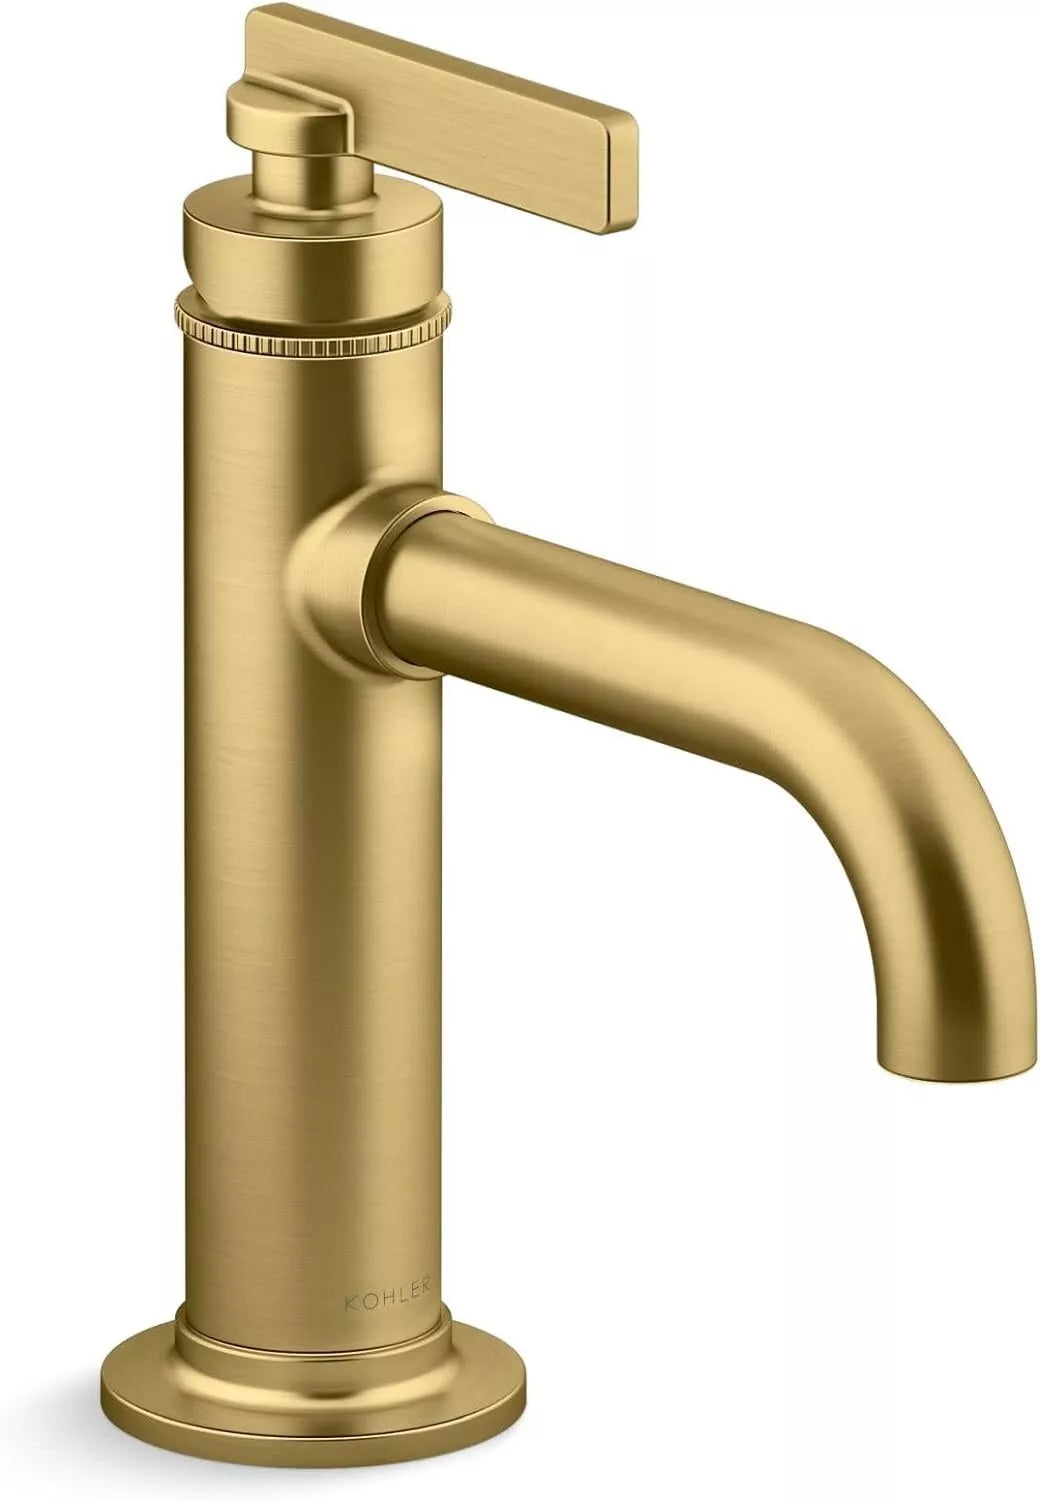 Kohler K-35907-4N-2MB - Bathroom Sink Faucet - Vibrant Brushed Moderne Brass